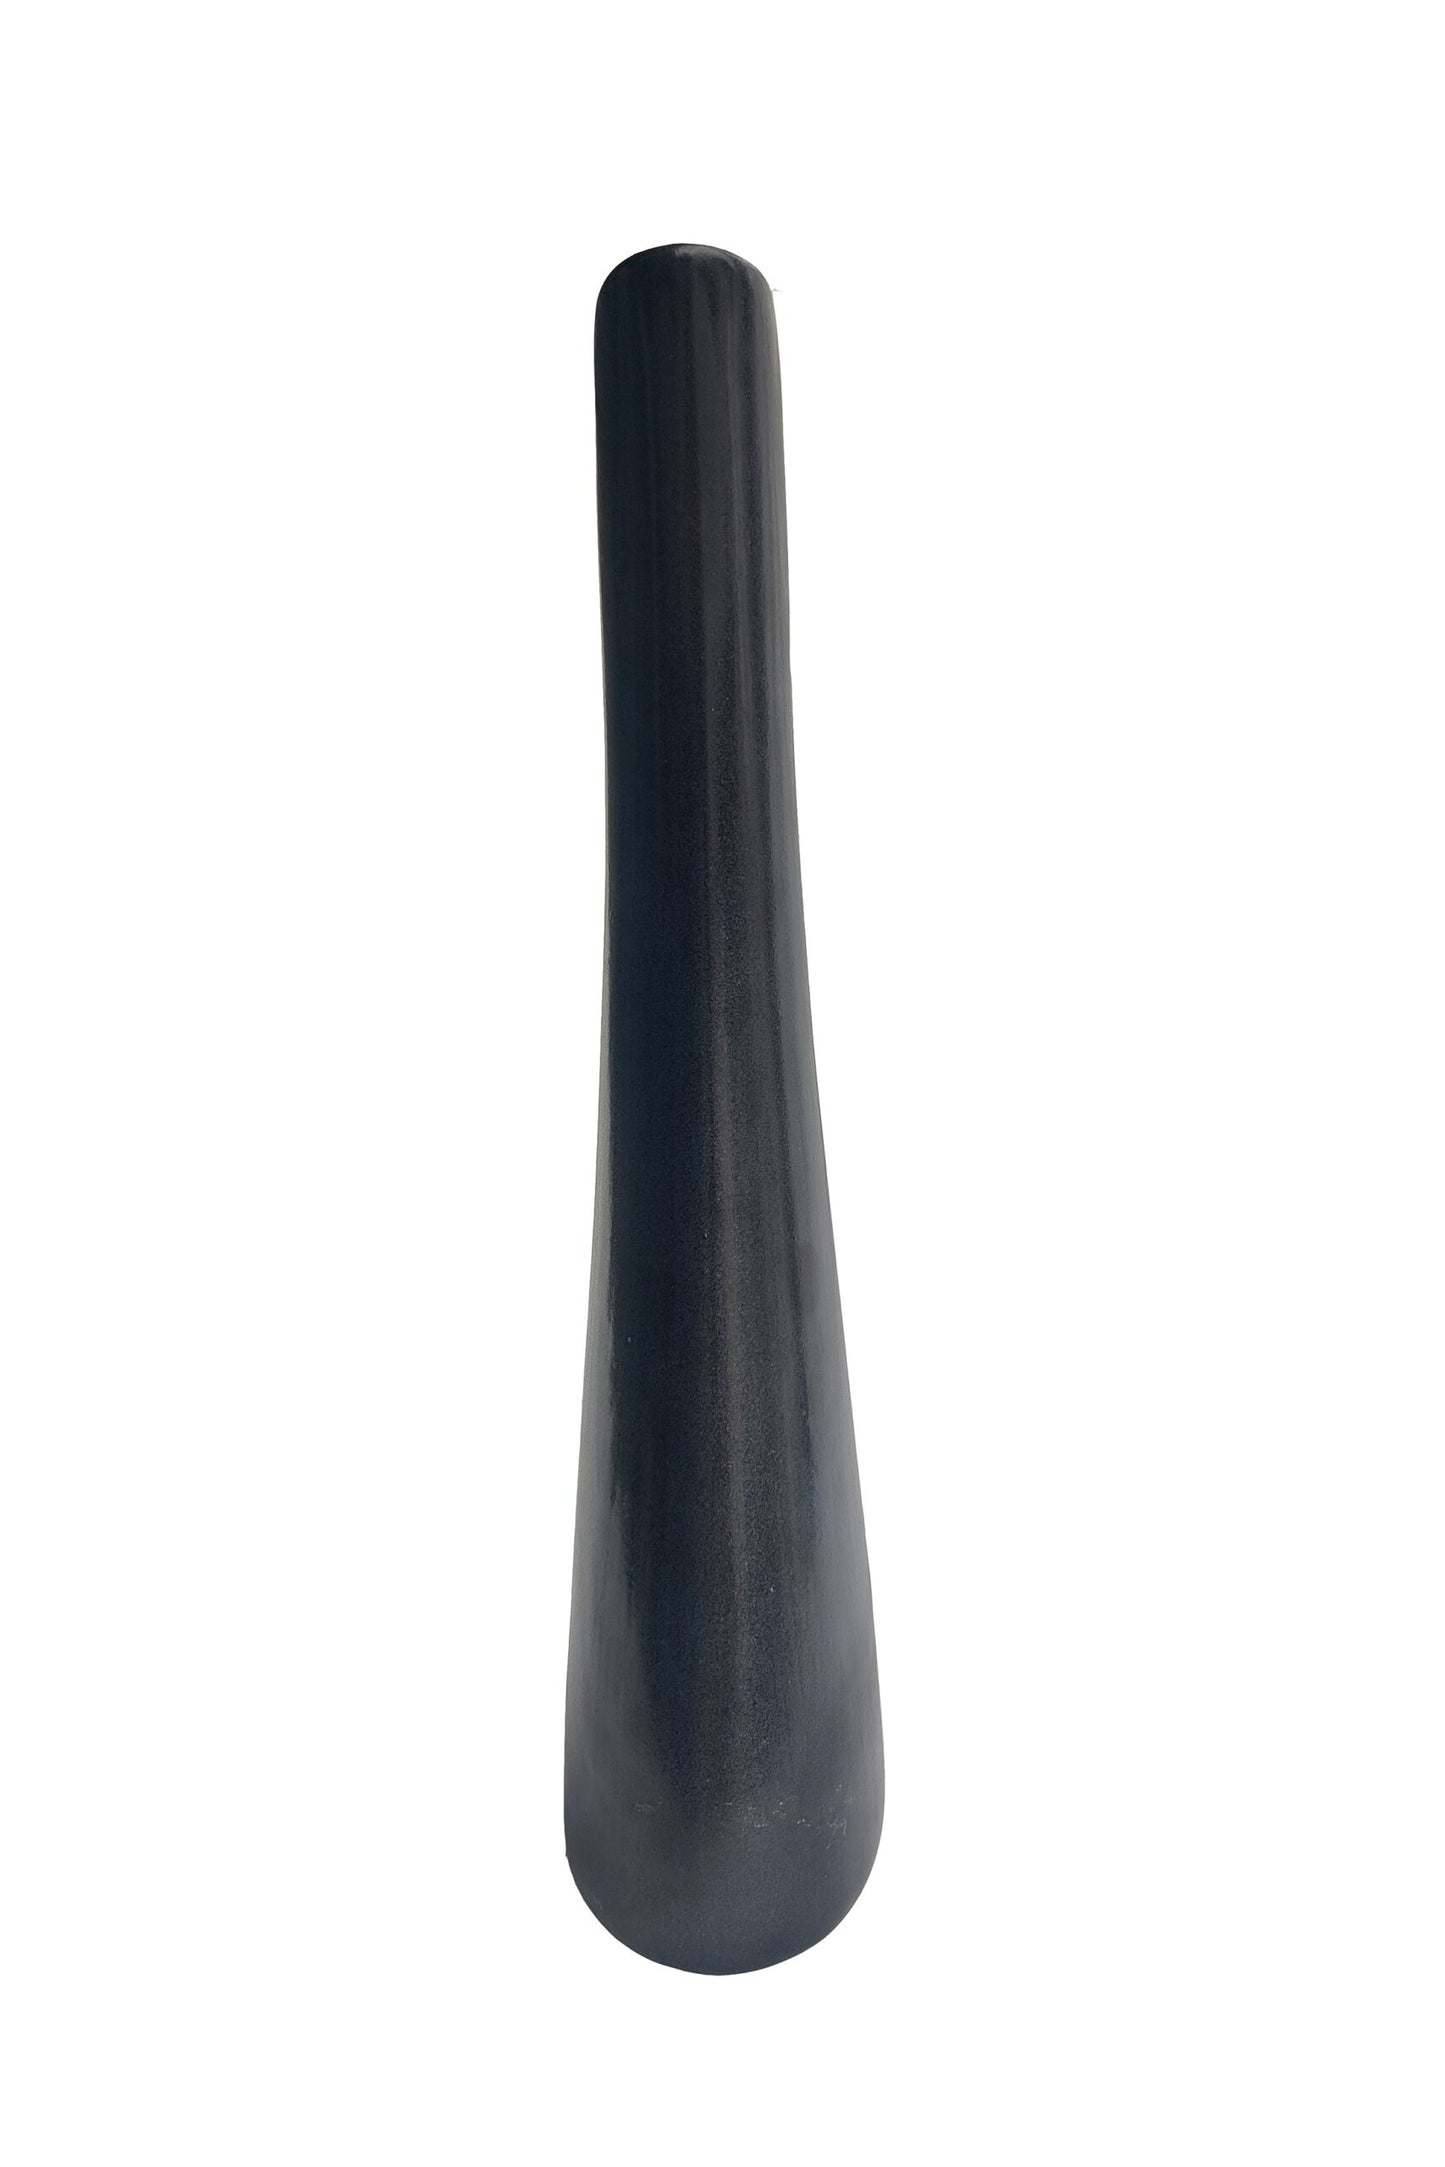 Biomorphic Vase